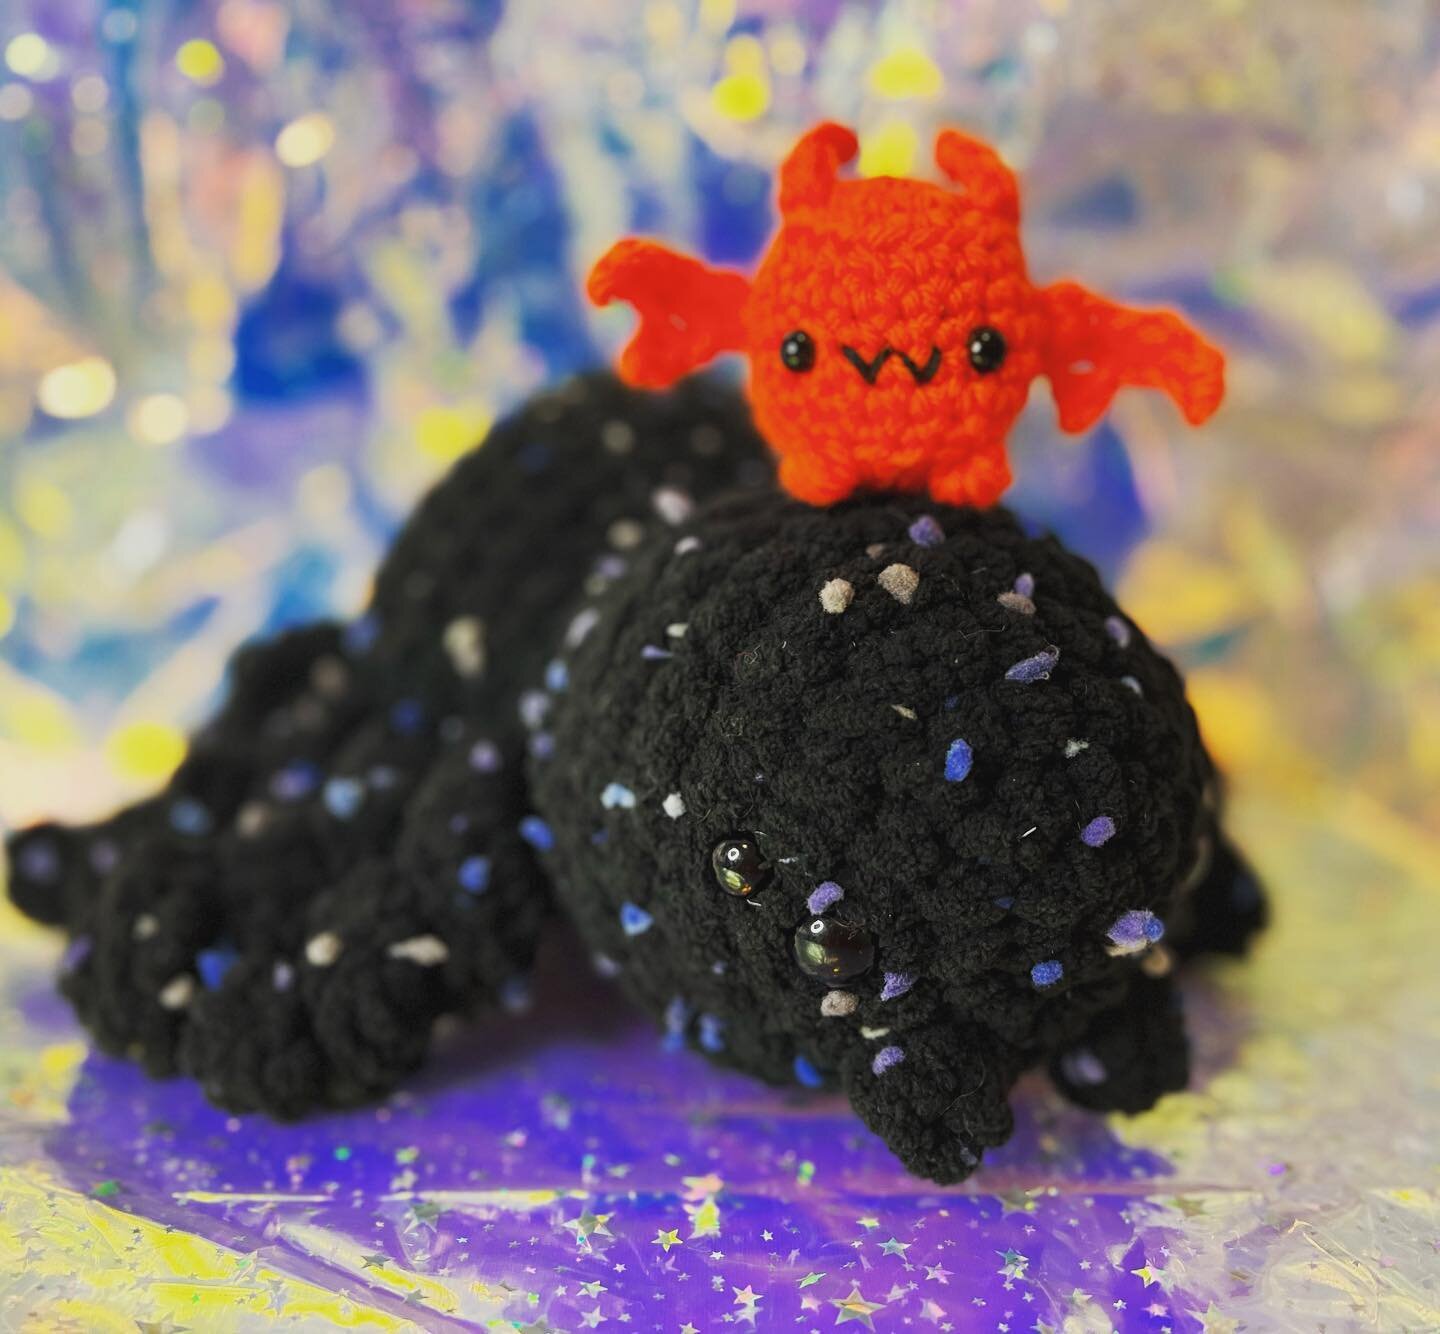 Lil besties! 

&hellip;&hellip;&hellip;&hellip;&hellip;&hellip;&hellip;.

#edensprout #crochet #spiderfriend #bat #crochetersofinstagram #crochetart #handmade #yyjarts